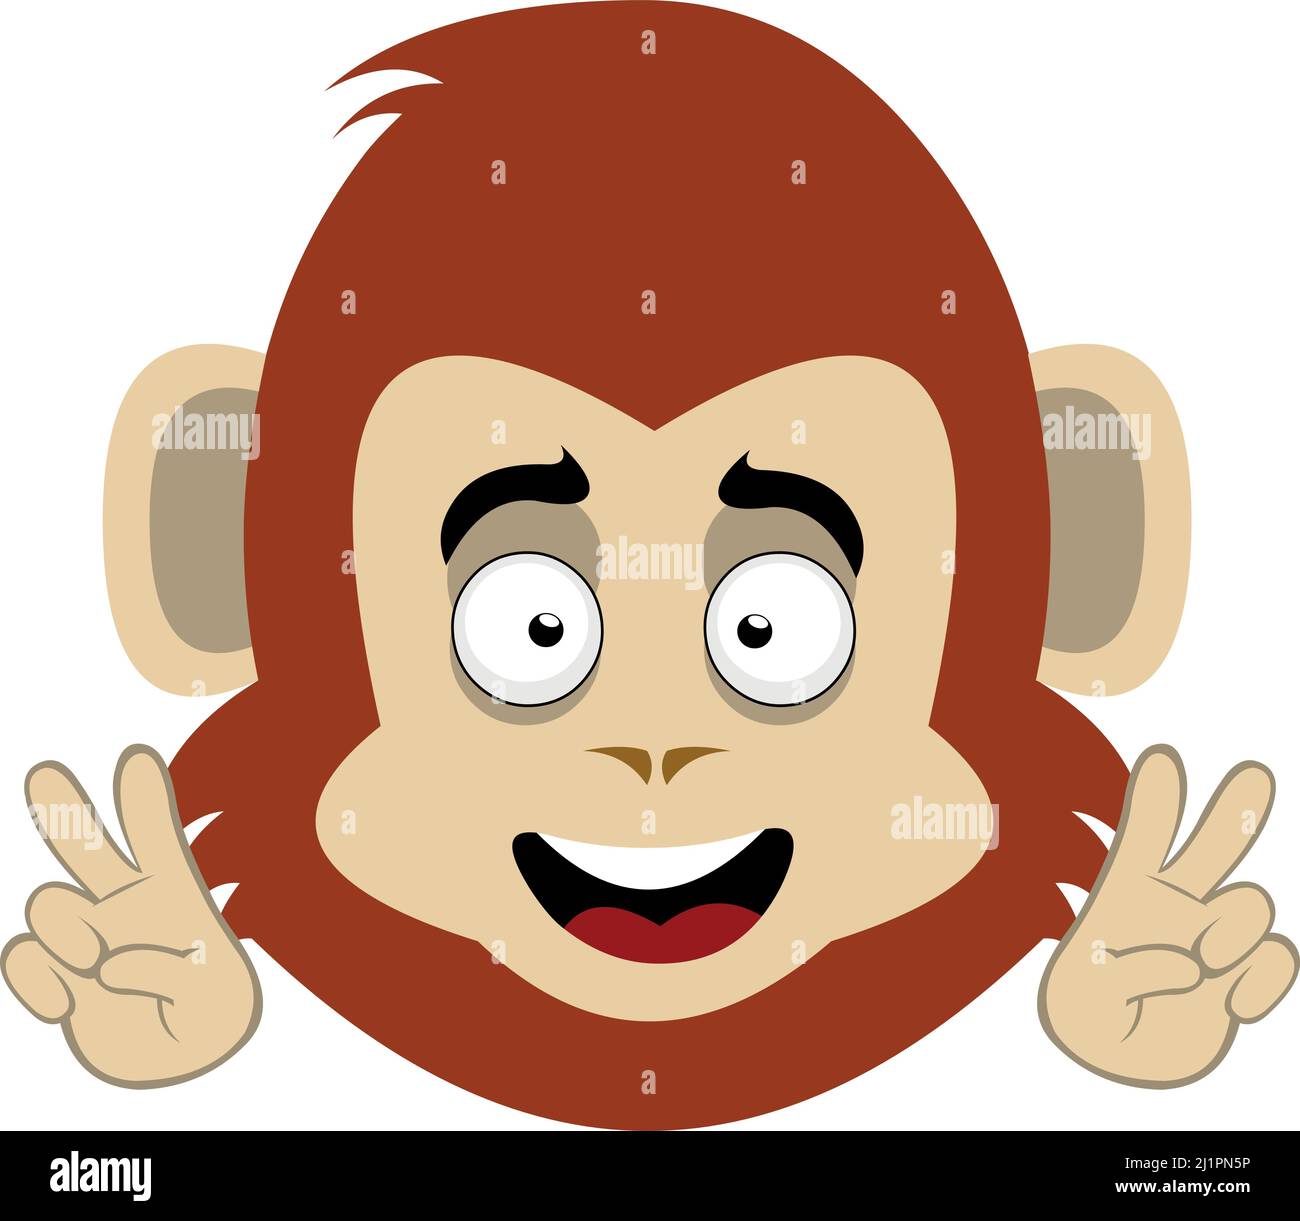 Vektor-Illustration eines Cartoon-Affen Gesicht macht Liebe und Frieden oder V-Sieg Geste mit seinen Händen Stock Vektor